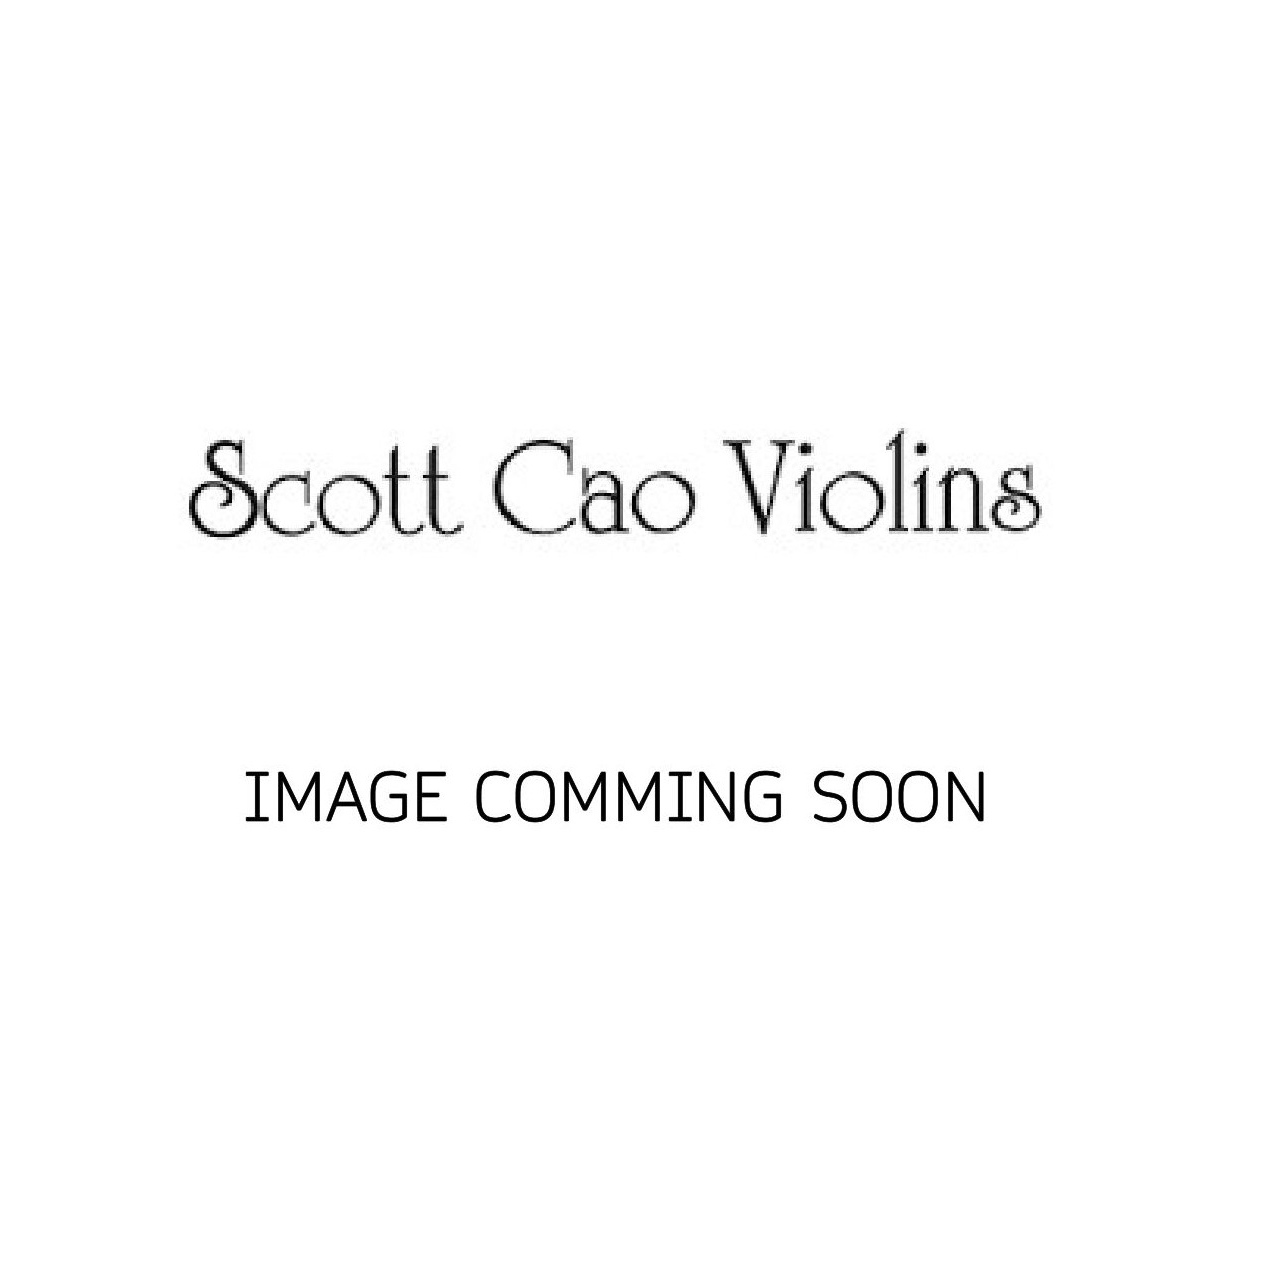 Scott Cao Viola 33,0 EU/EU